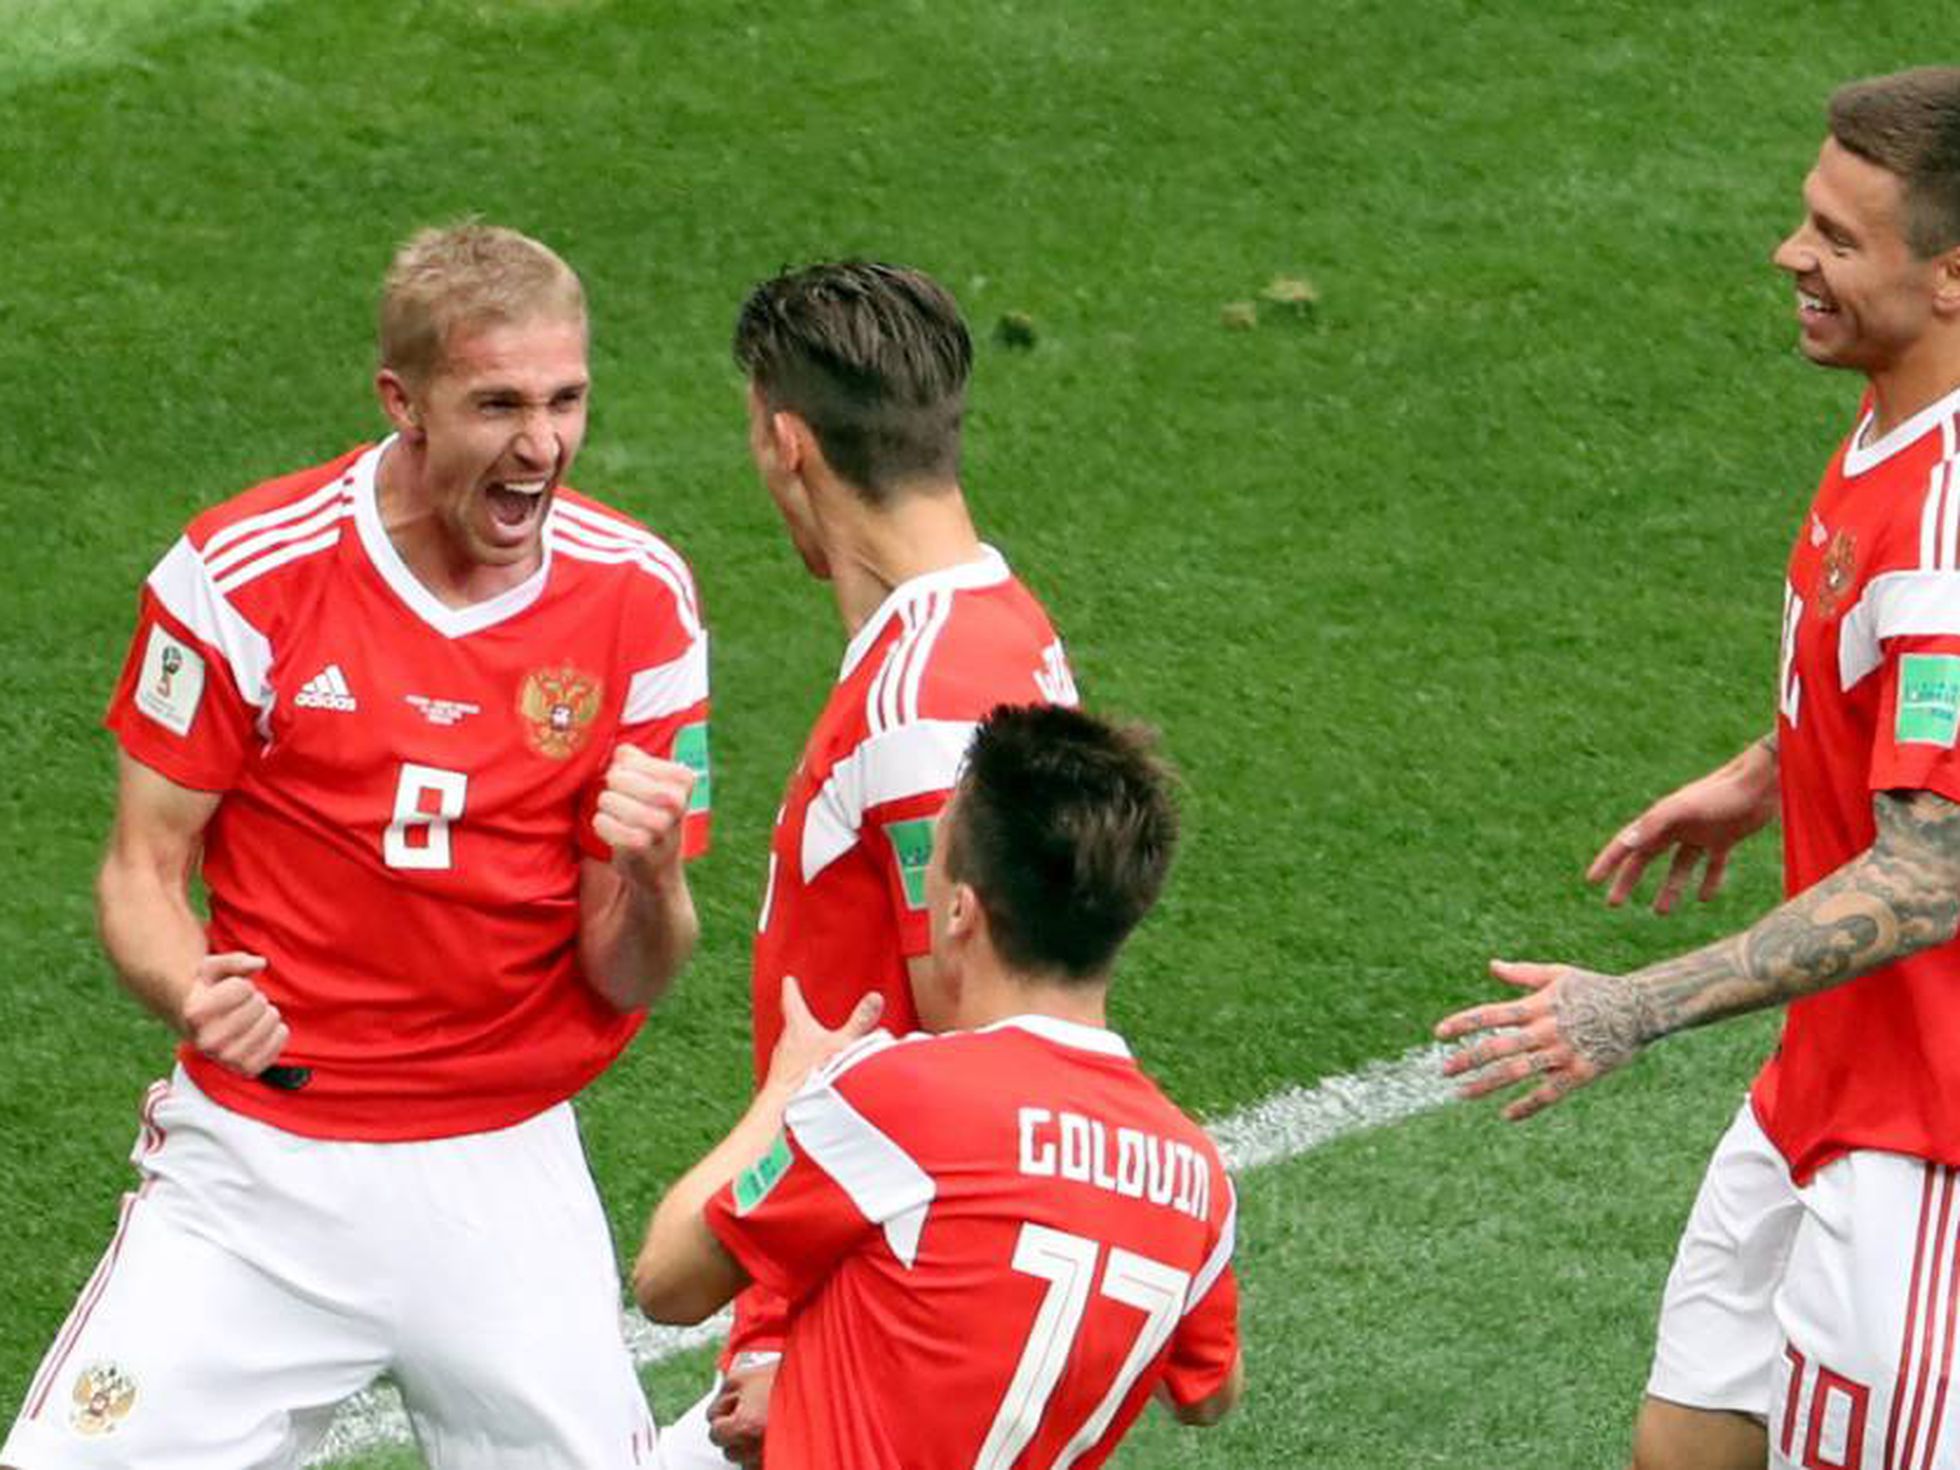 El primer partido de fútbol en la historia de la Copa del Mundo – Rumbo a Rusia 2018 | Axel Solis